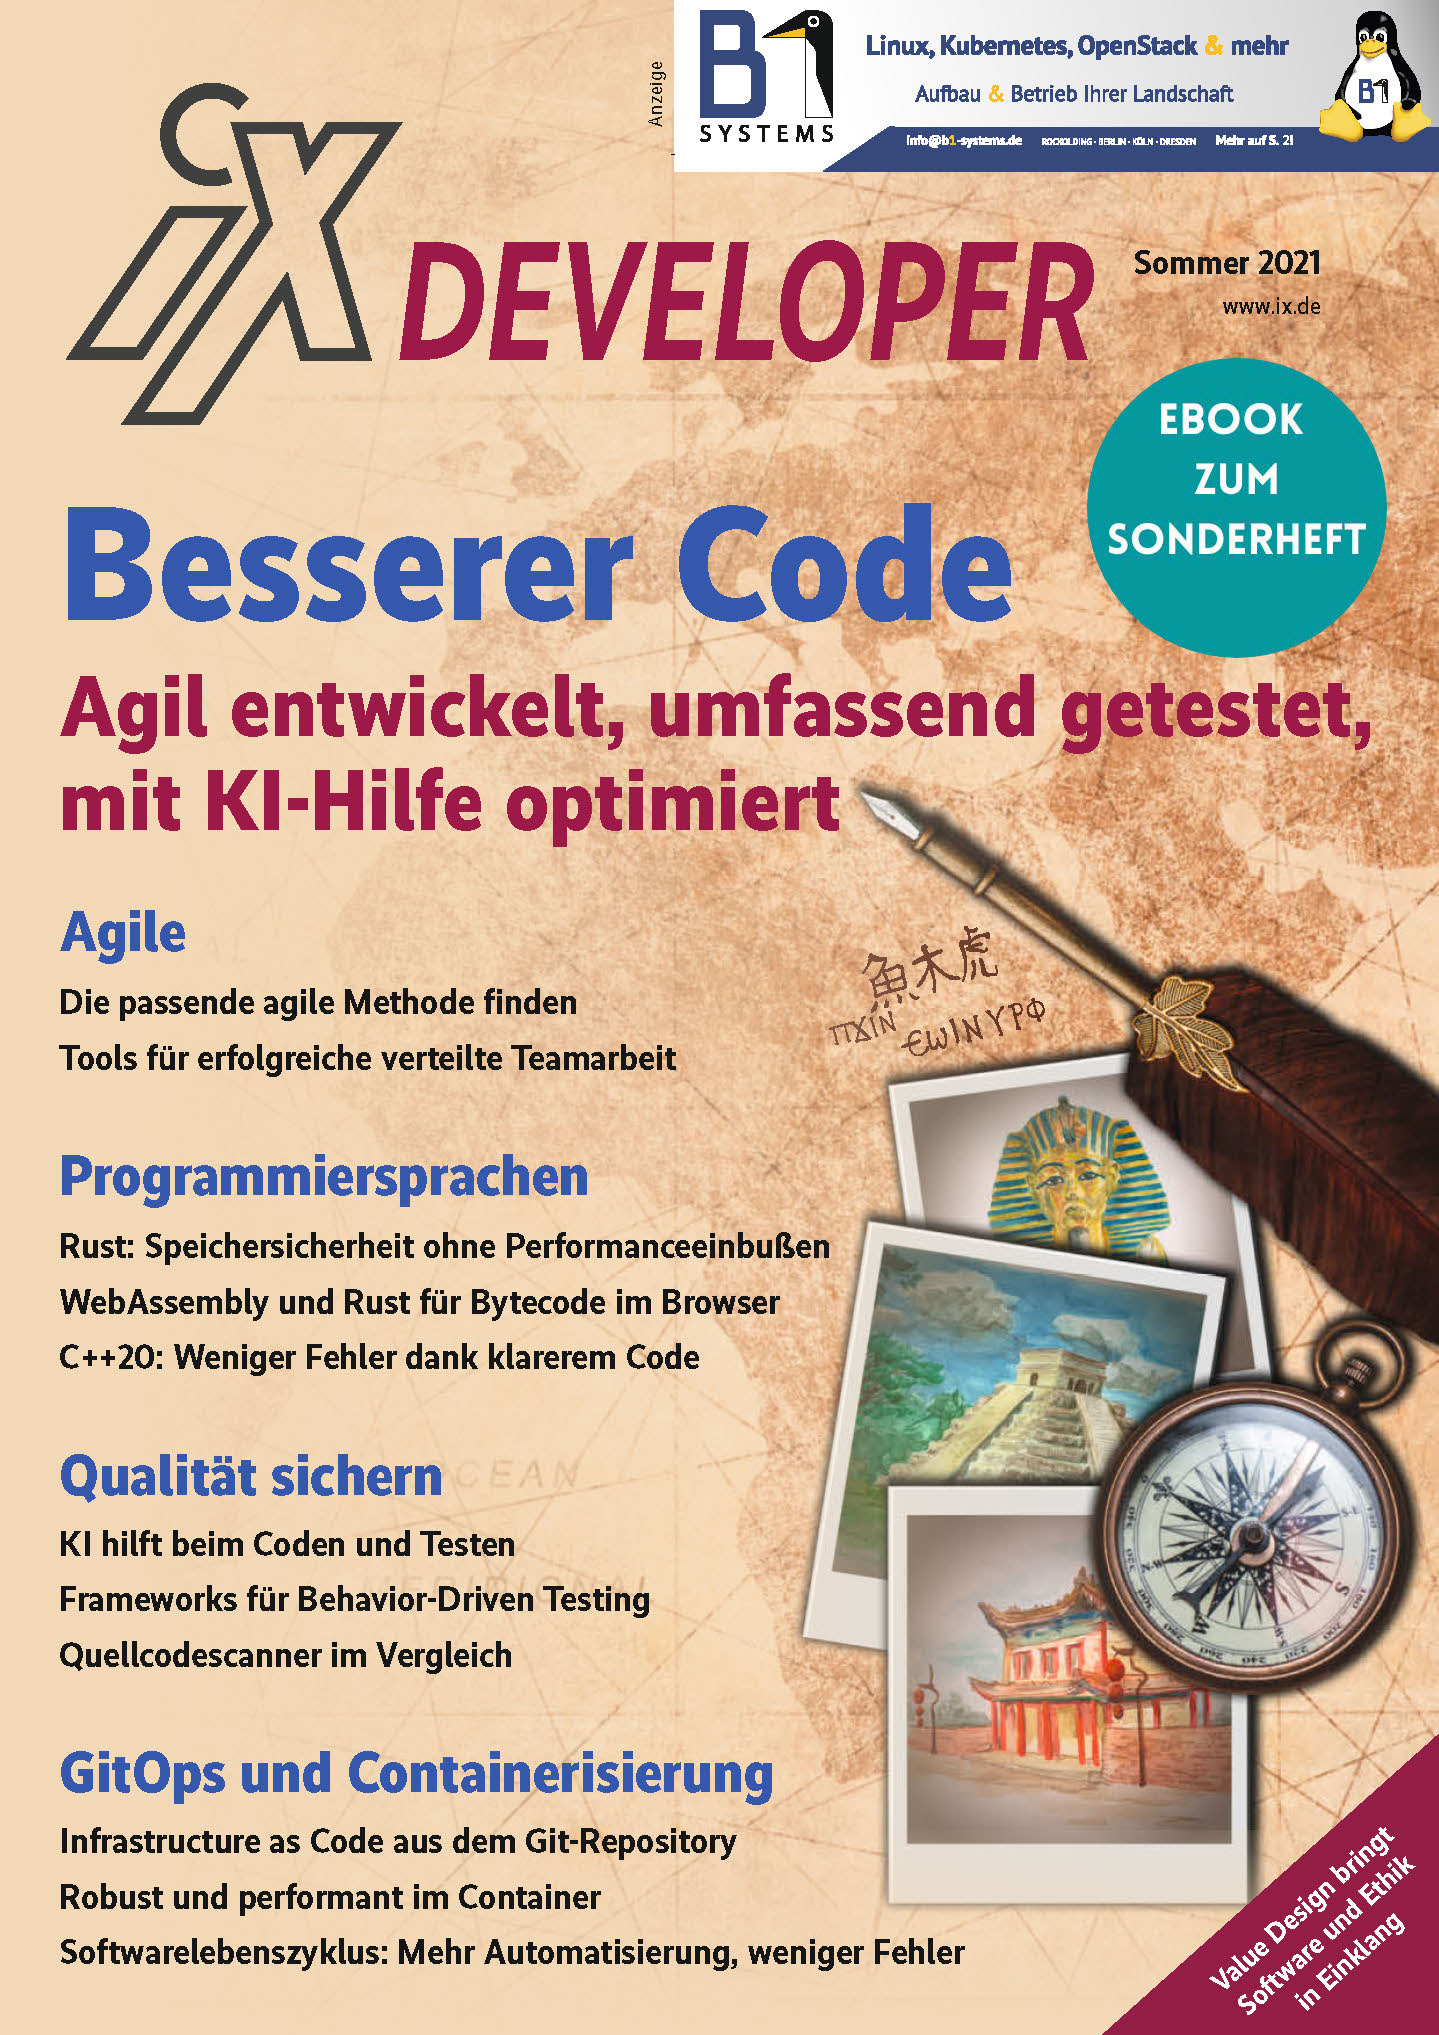 iX Developer Besserer Code (eBook zum Sonderheft)